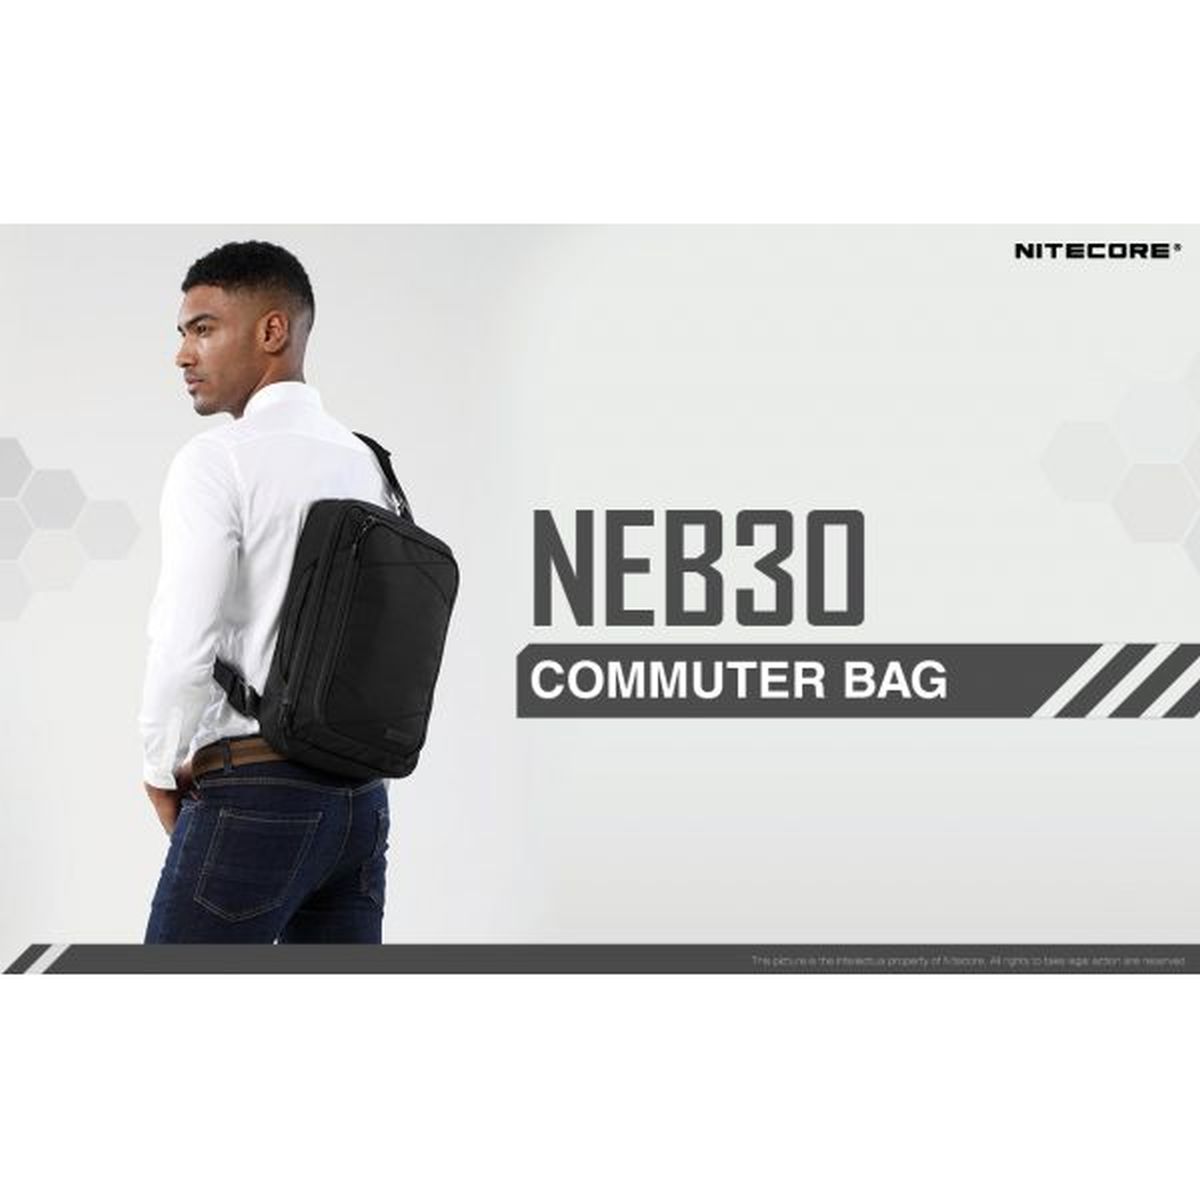 Nitecore NEB30 Commuter